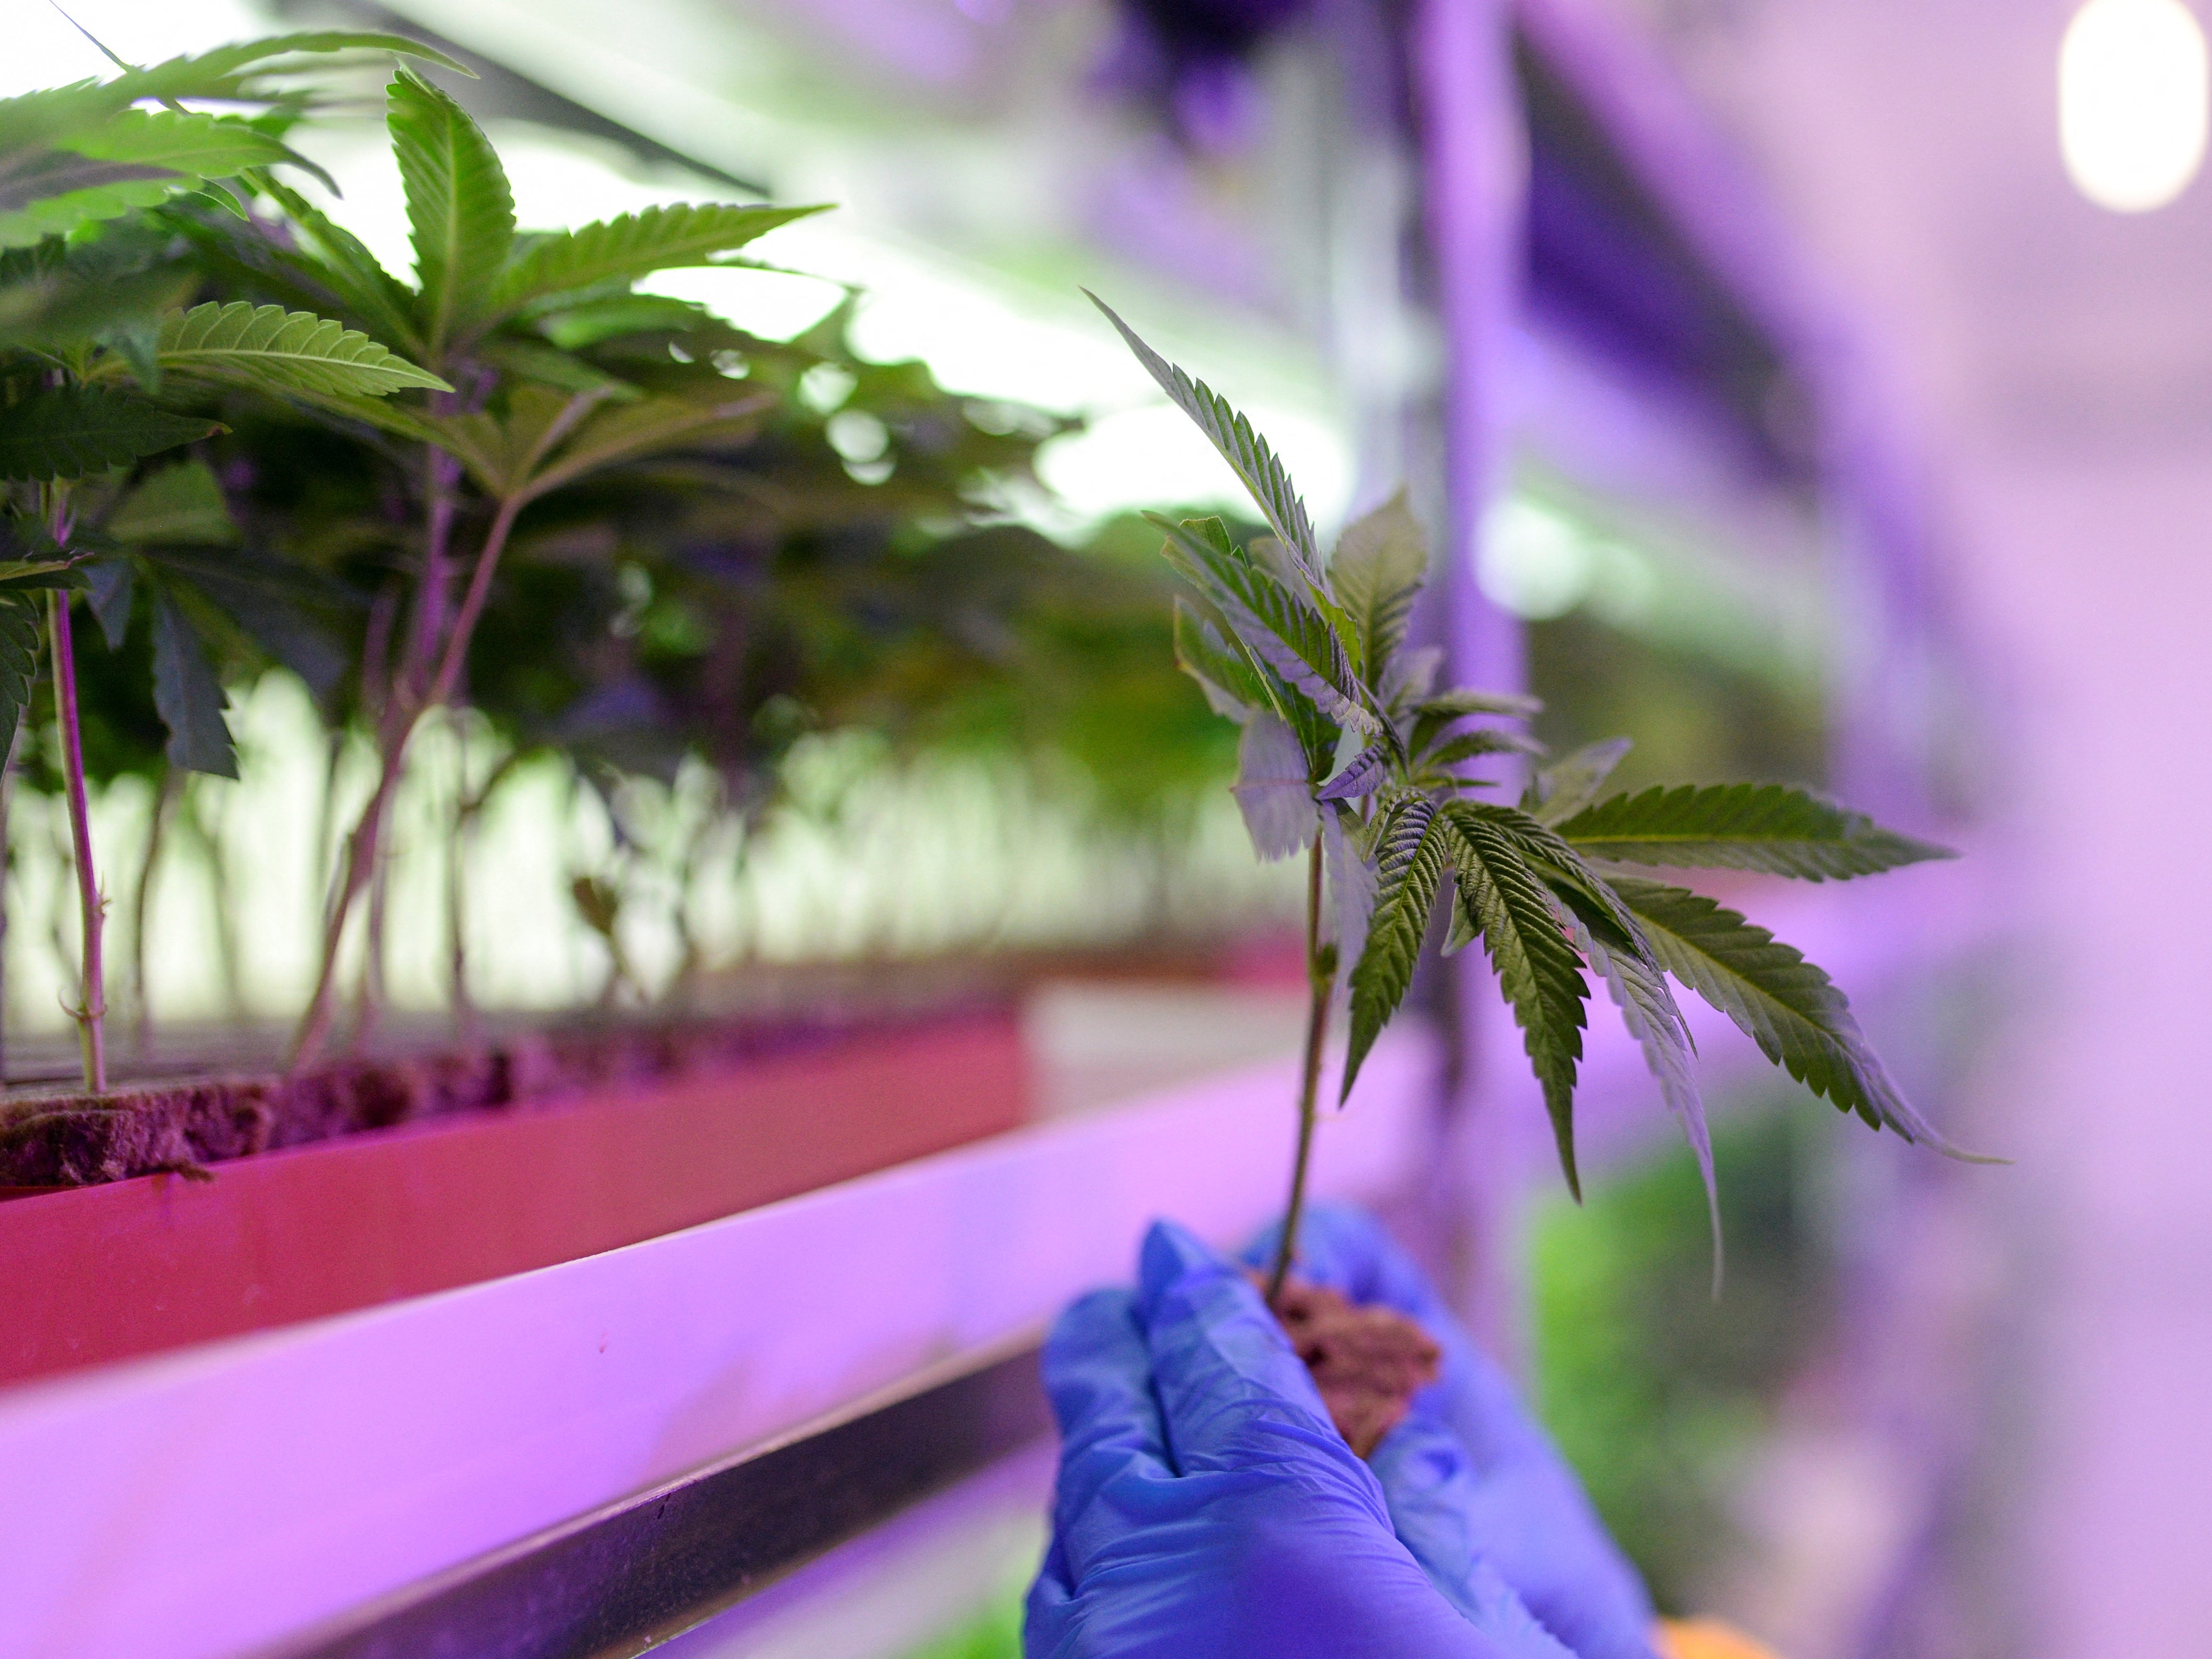 A worker checks a young cannabis plant at a medical cannabis farm near Skopje